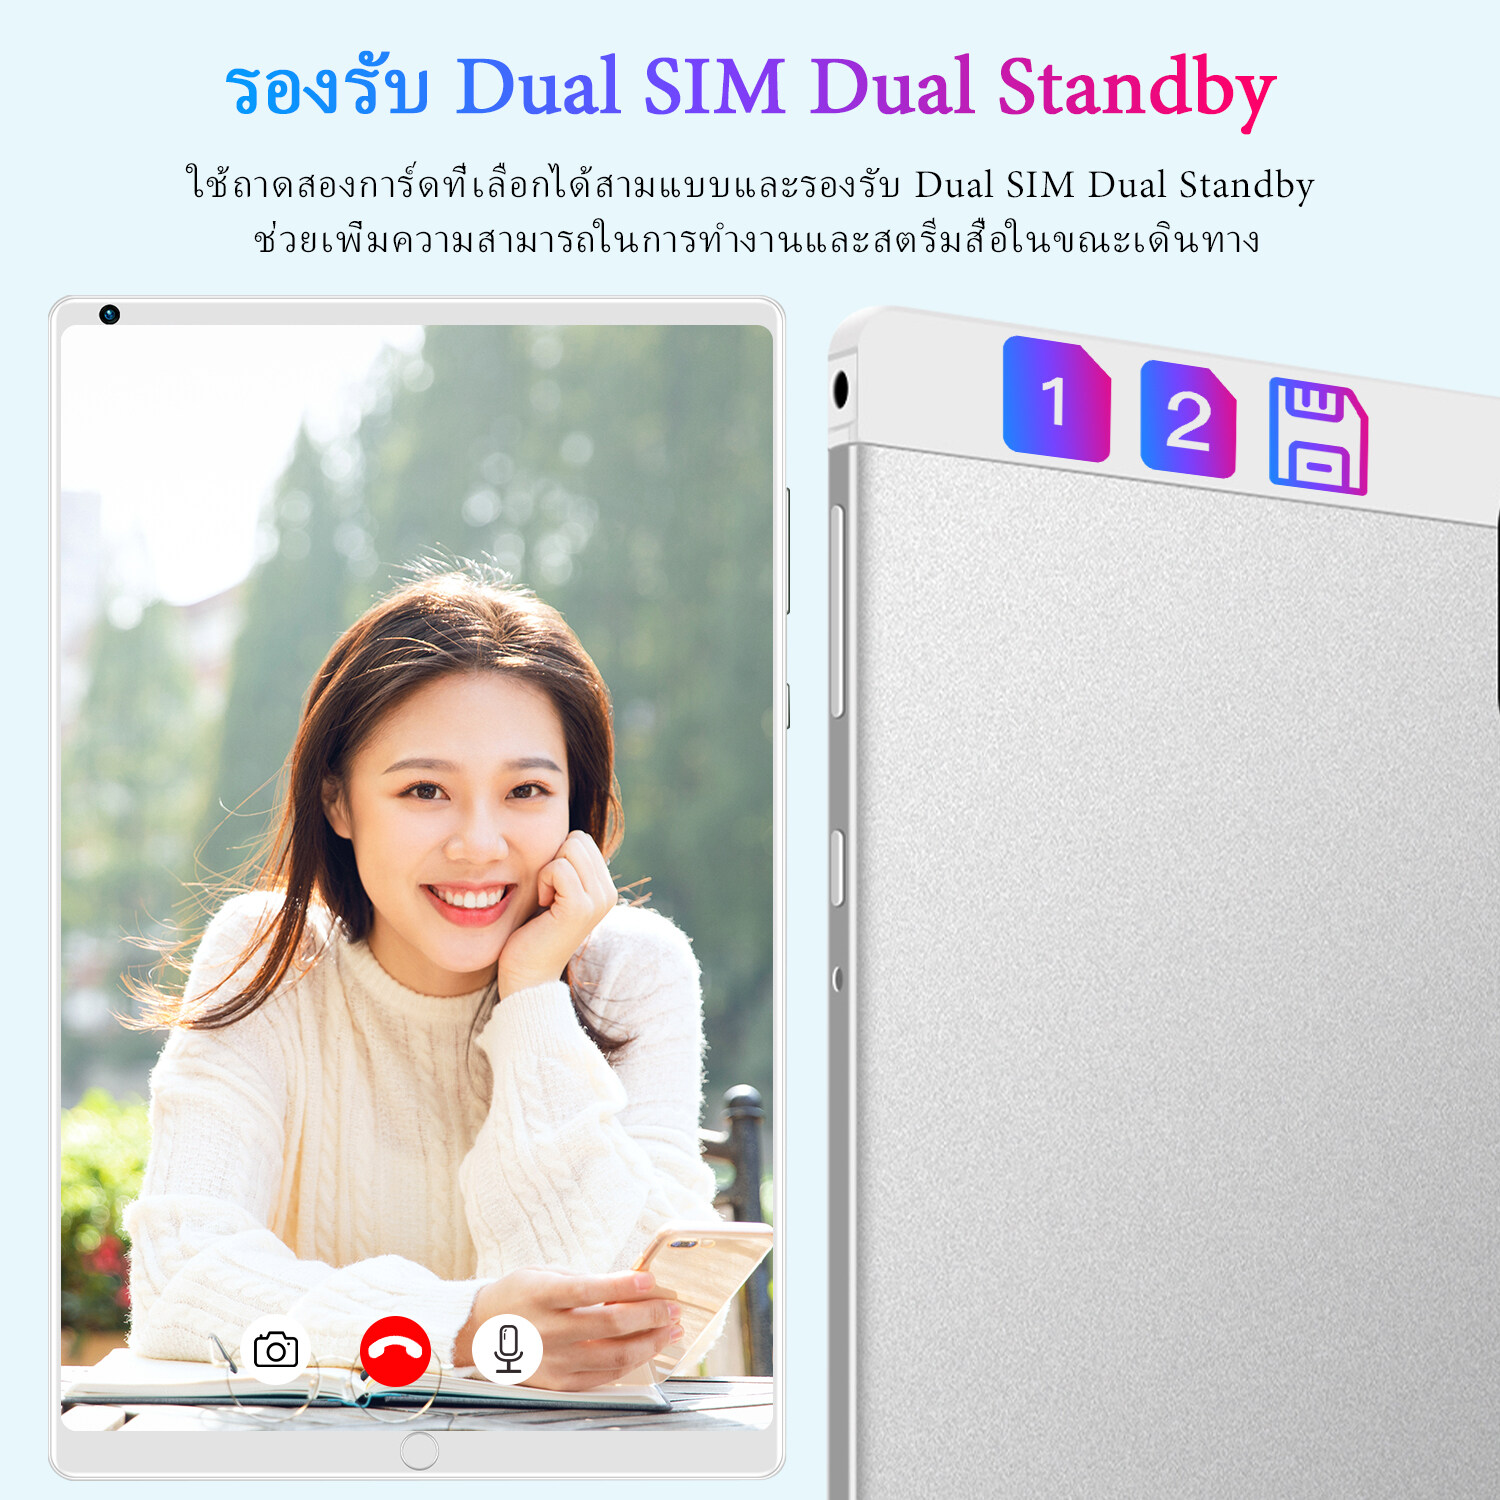 รูปภาพของ 【ซื้อ 1 แถม 1】ใหม่ Sansumg Tab A8 แท็บเล็ต 10.4 นิ้ว Tablet Wifi 4g/5G แท็บเล็ตพีซี RAM16G ROM512G แท็บเล็ตโทรได้ รองรับ 2 ซิมการ์ด Andorid11.0 Full HD 8800 mAh ไอเเพ็ด แท็บเล็ตราคาถูก ไอเเพ็ดส่งฟรี แท็บเล็ตของแท้ แท็บเล็ตราคาถูกรุ่นล่าสุด รับประกัน 1 ปี